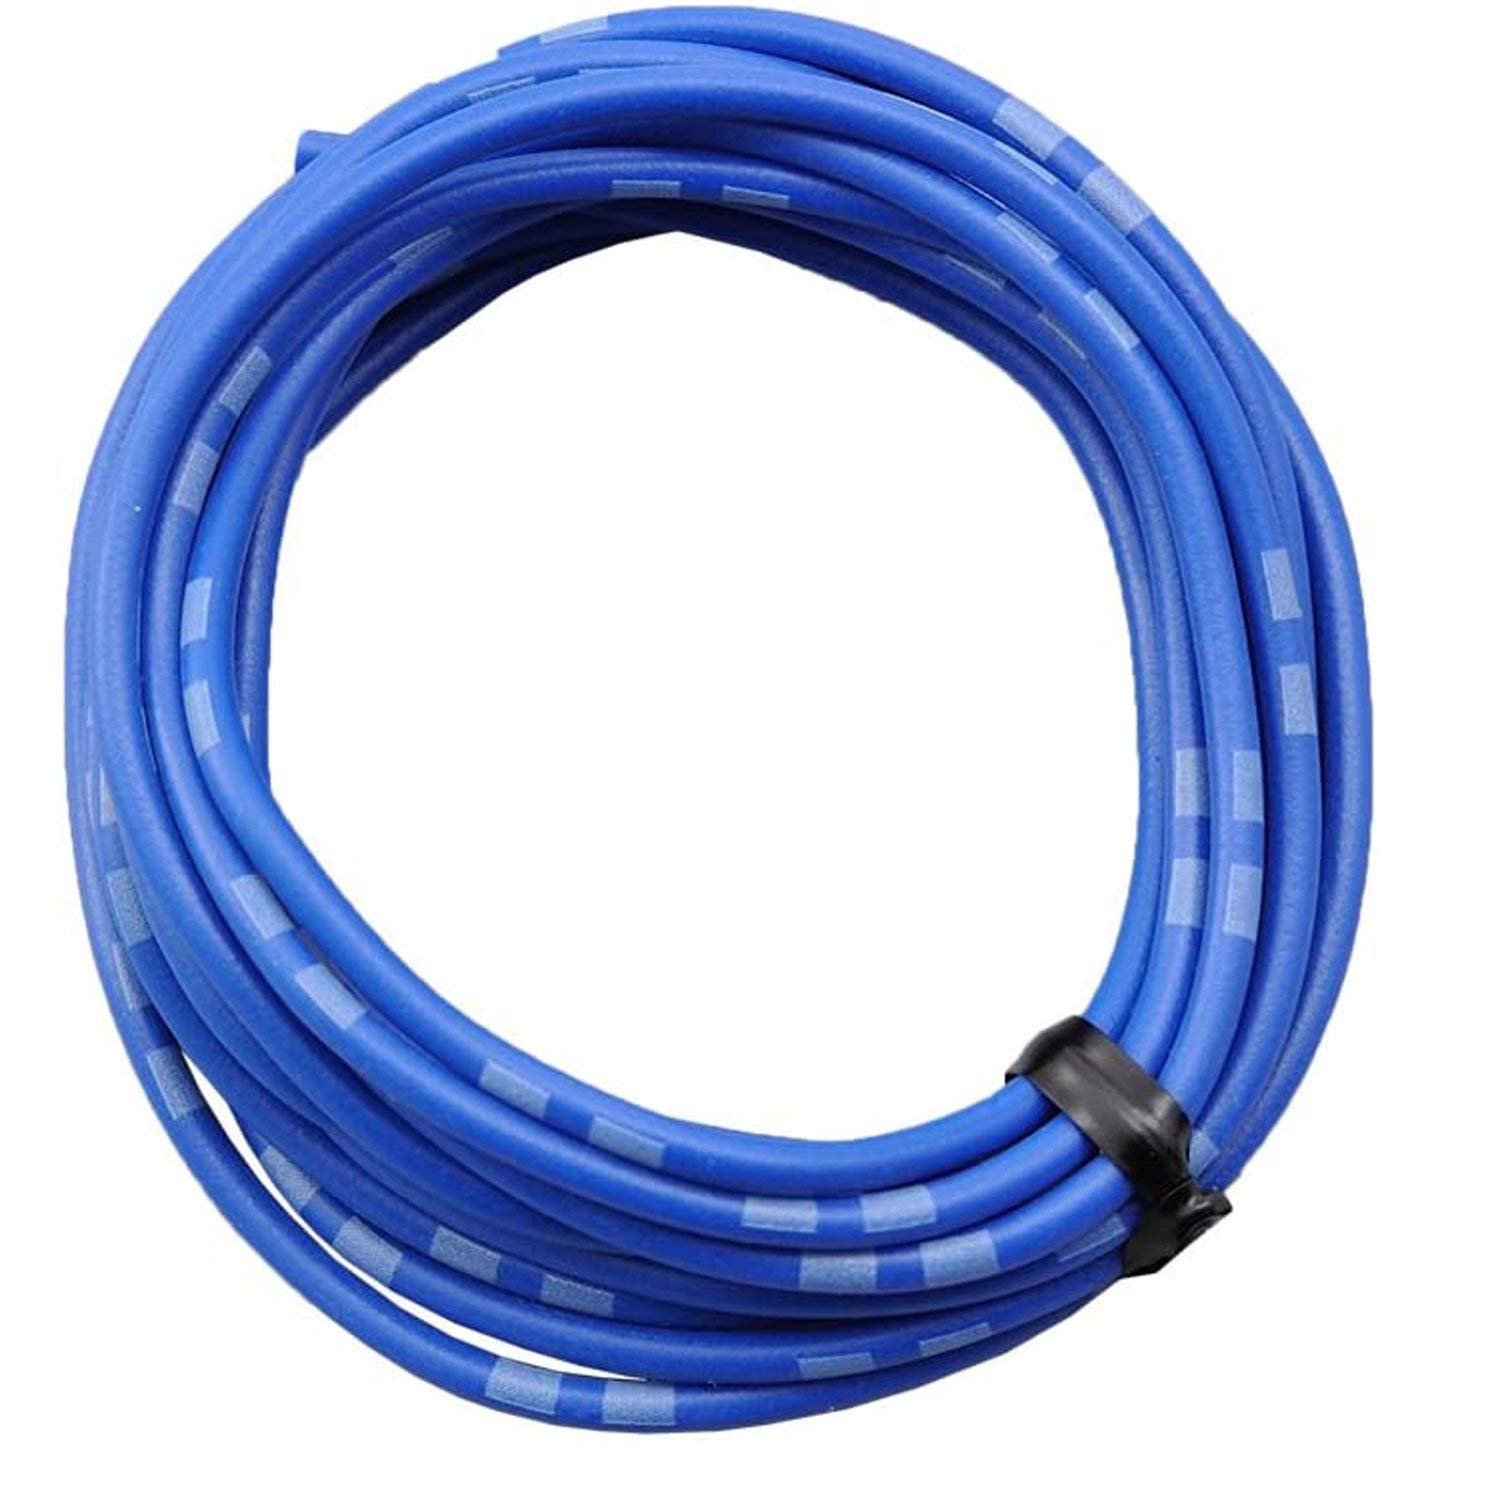 DAYTONA farbiges Kabel AWG18 0.75qmm, 2 Meter, blau von Daytona